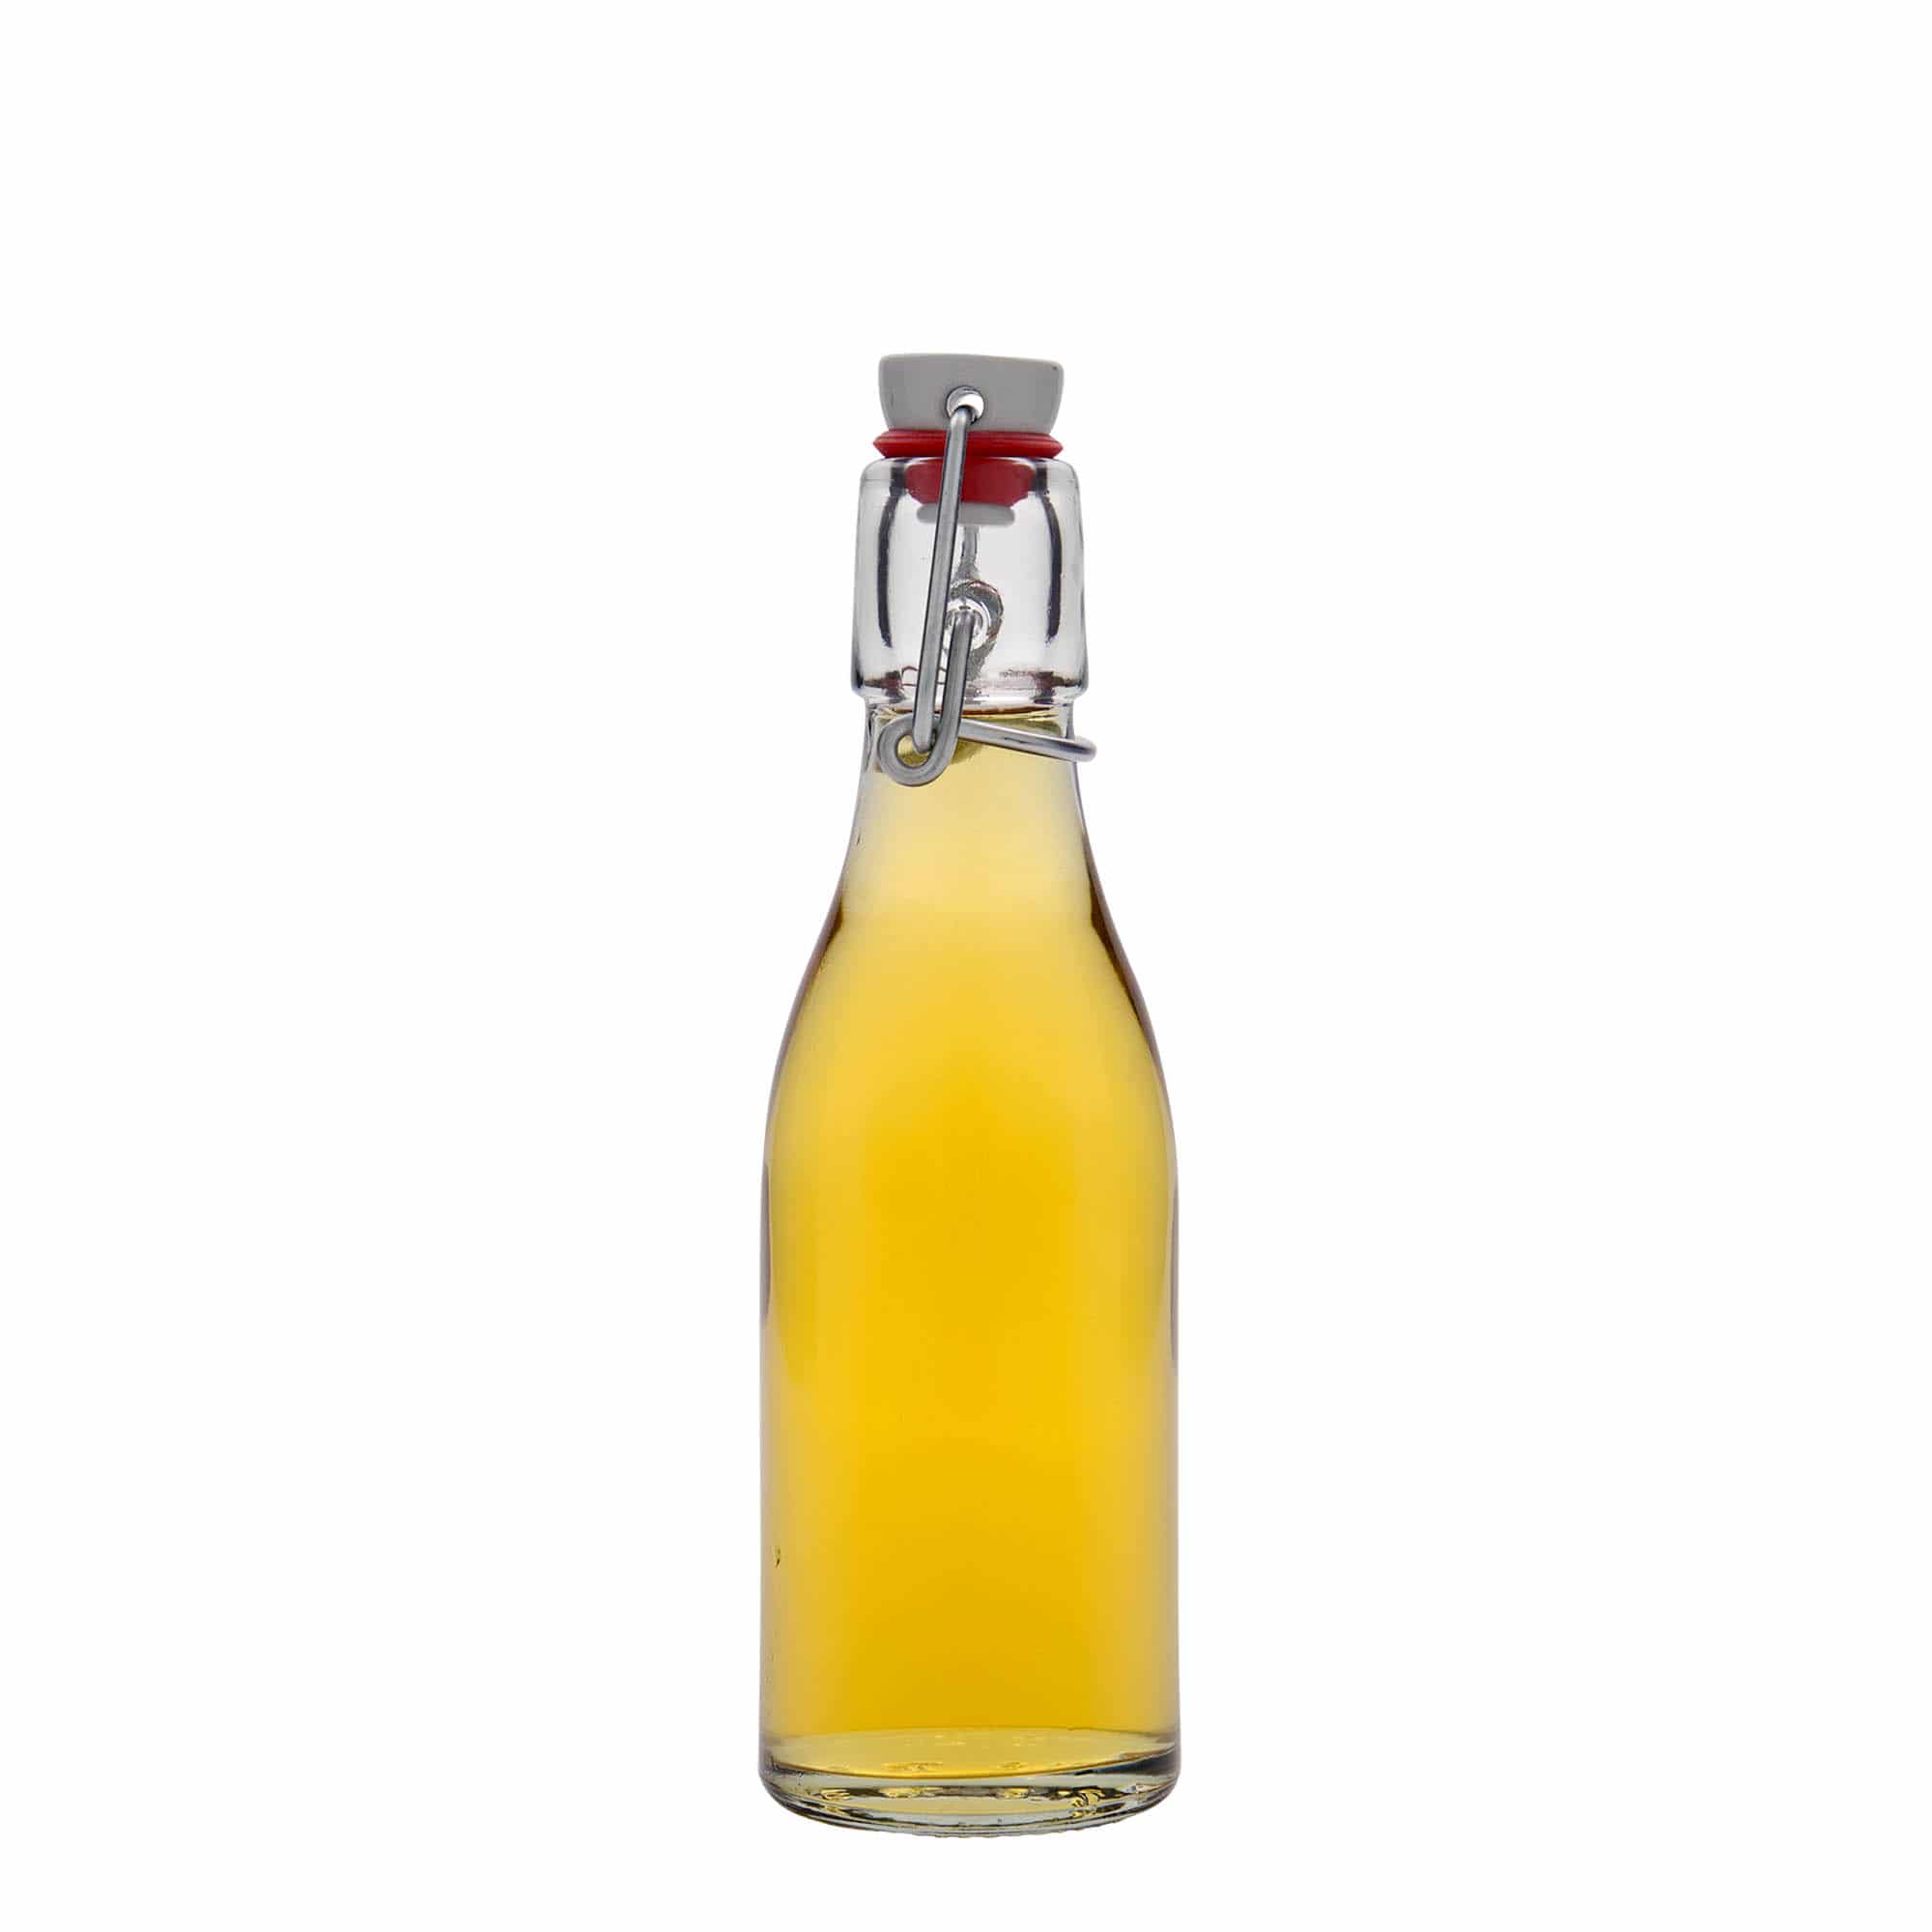 200 ml glass bottle 'Paul', closure: swing top